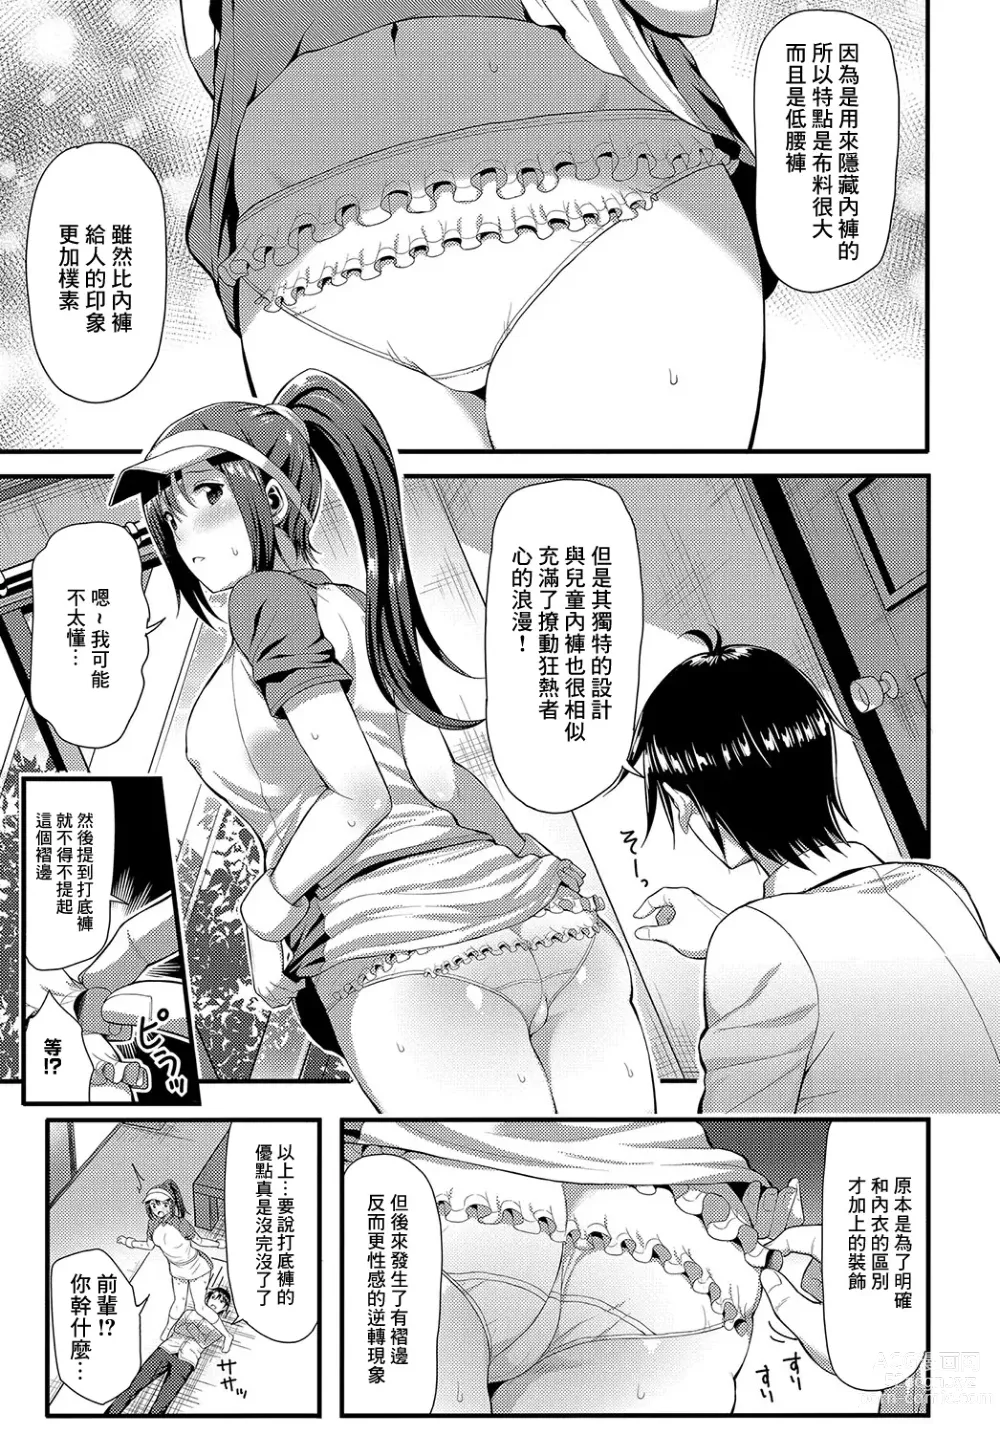 Page 3 of manga UnSkor Suko Suko!?